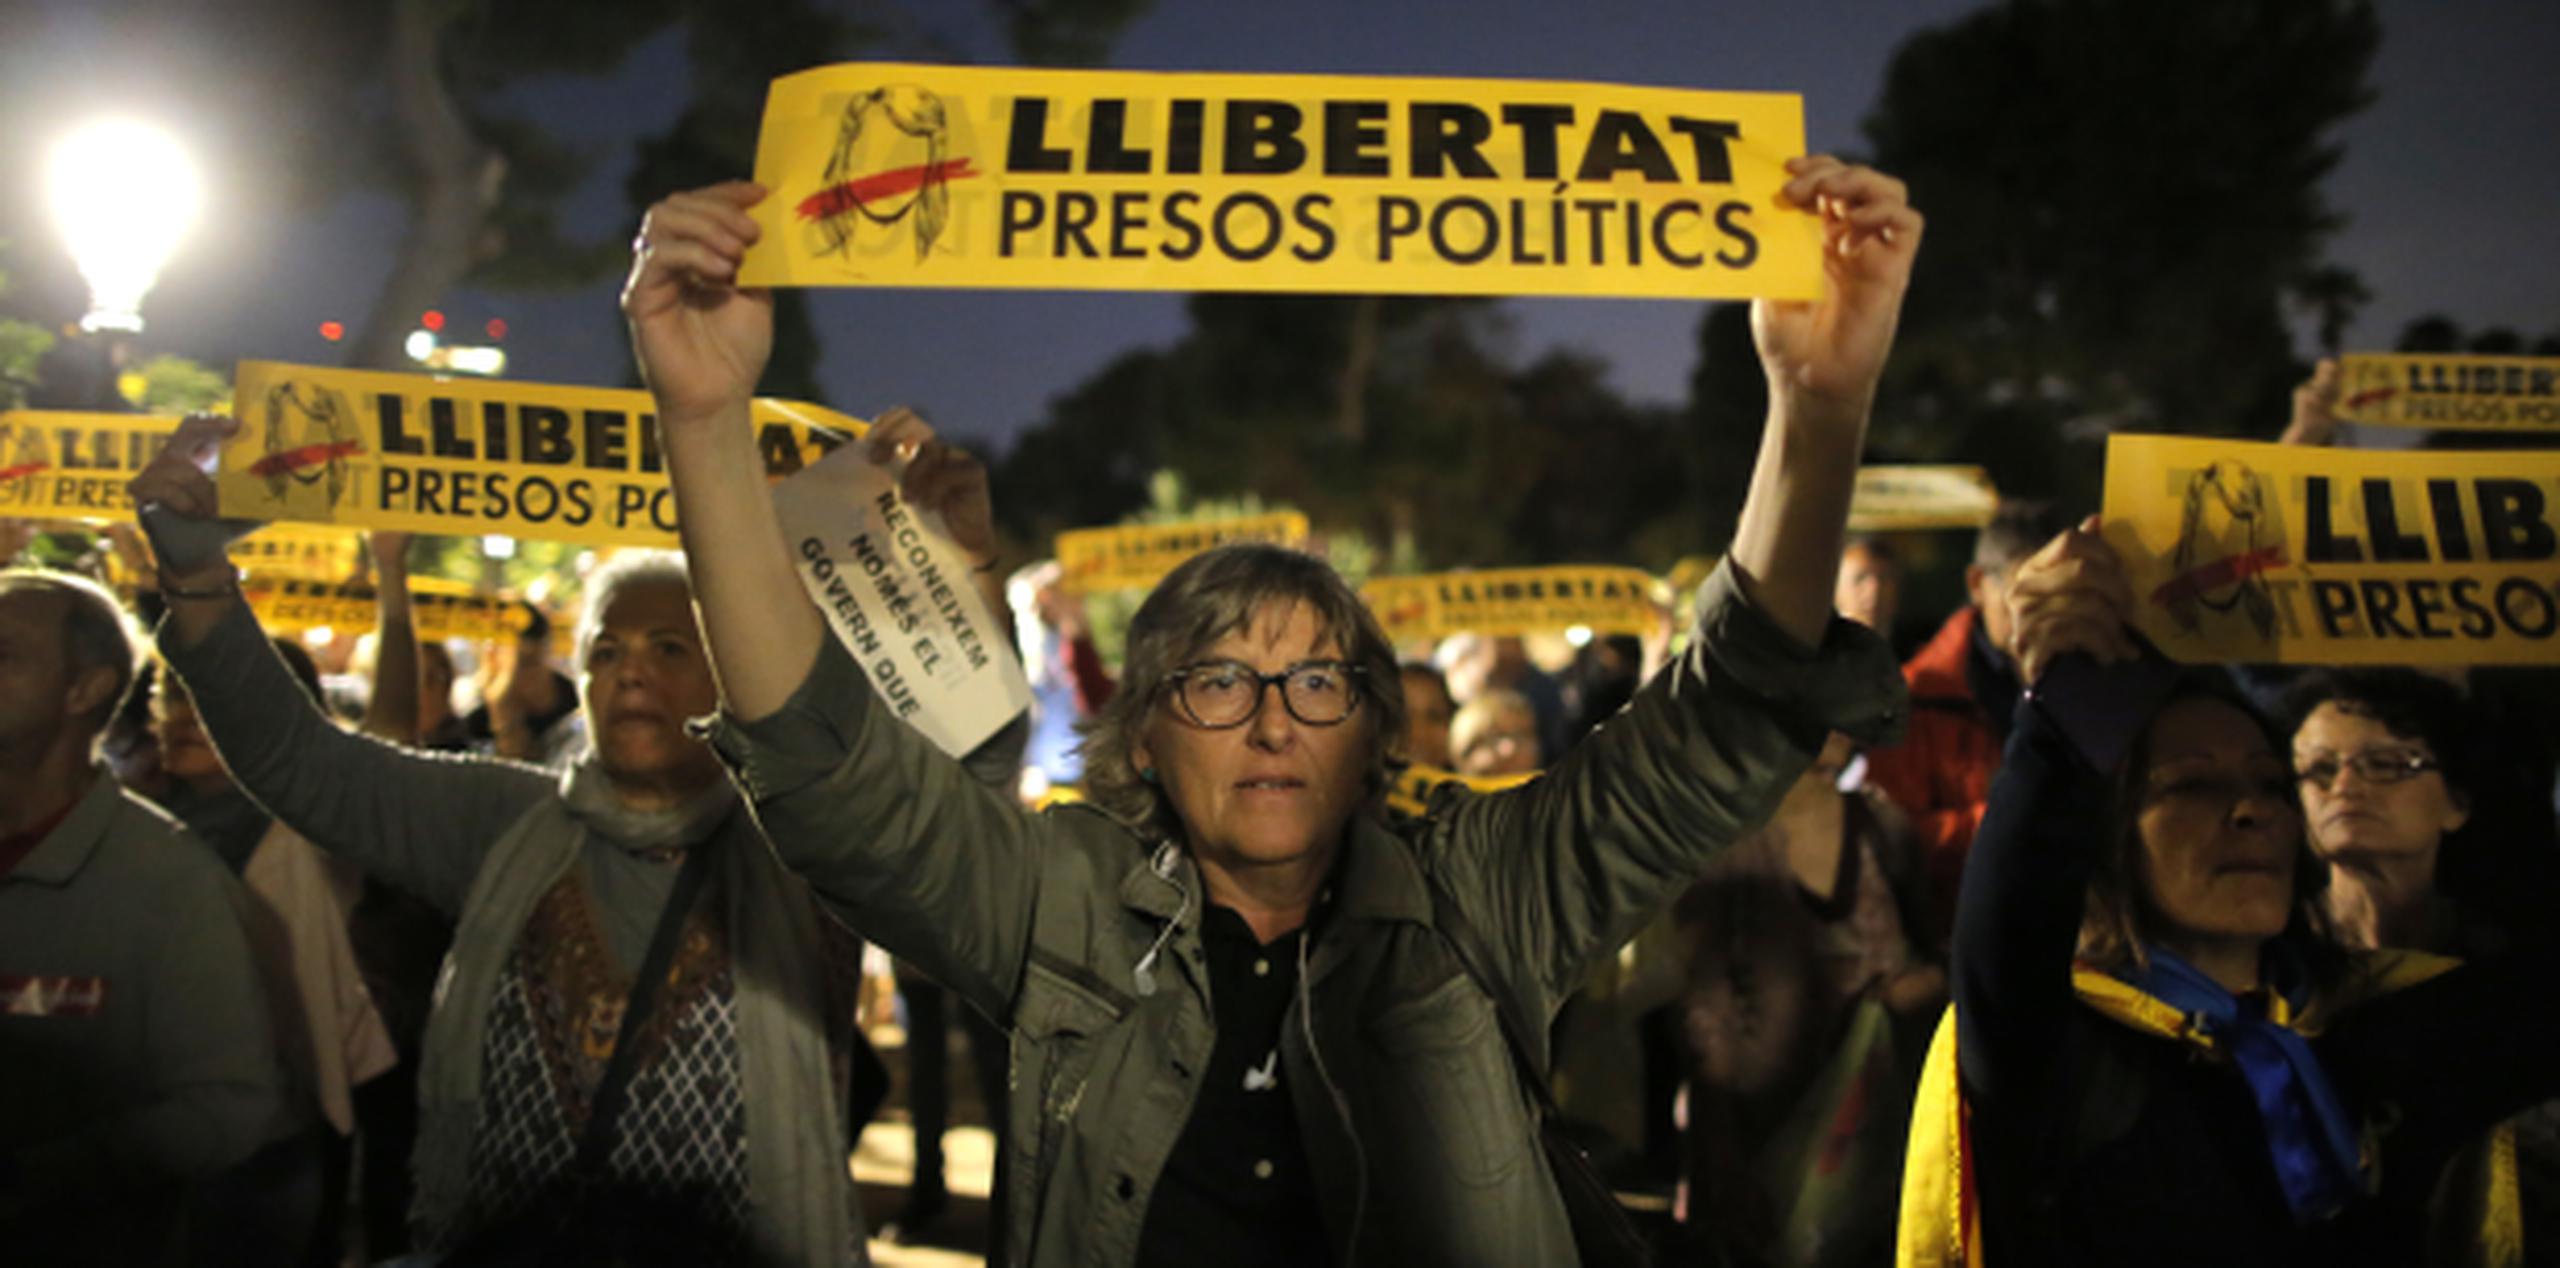 El encarcelamiento de los exmiembros del gobierno catalán provocó una nueva oleada de protestas en Cataluña y el expresidente Puigdemont huyó a Bruselas esta semana. (AP)